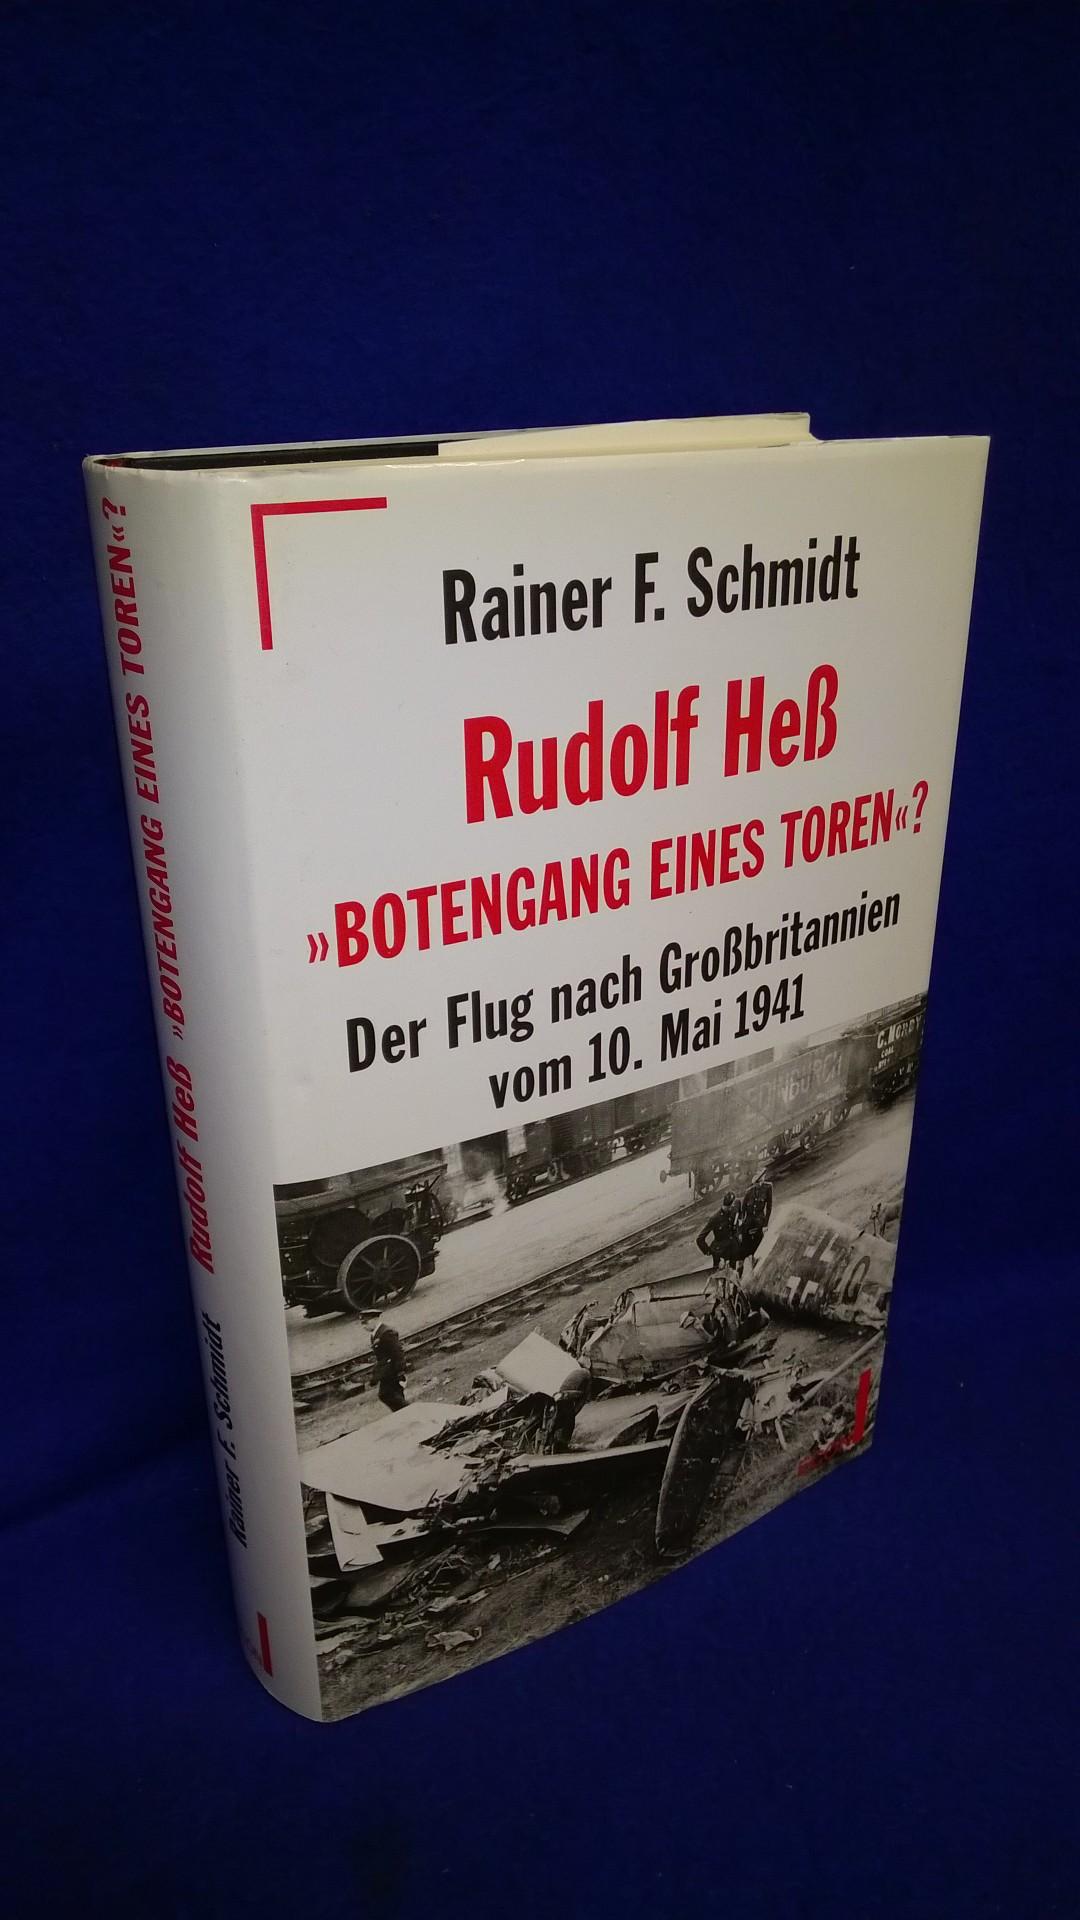 Rudolf Hess - "Botengang eines Toren?". Der Flug nach Grossbritannien vom 10. Mai 1941.